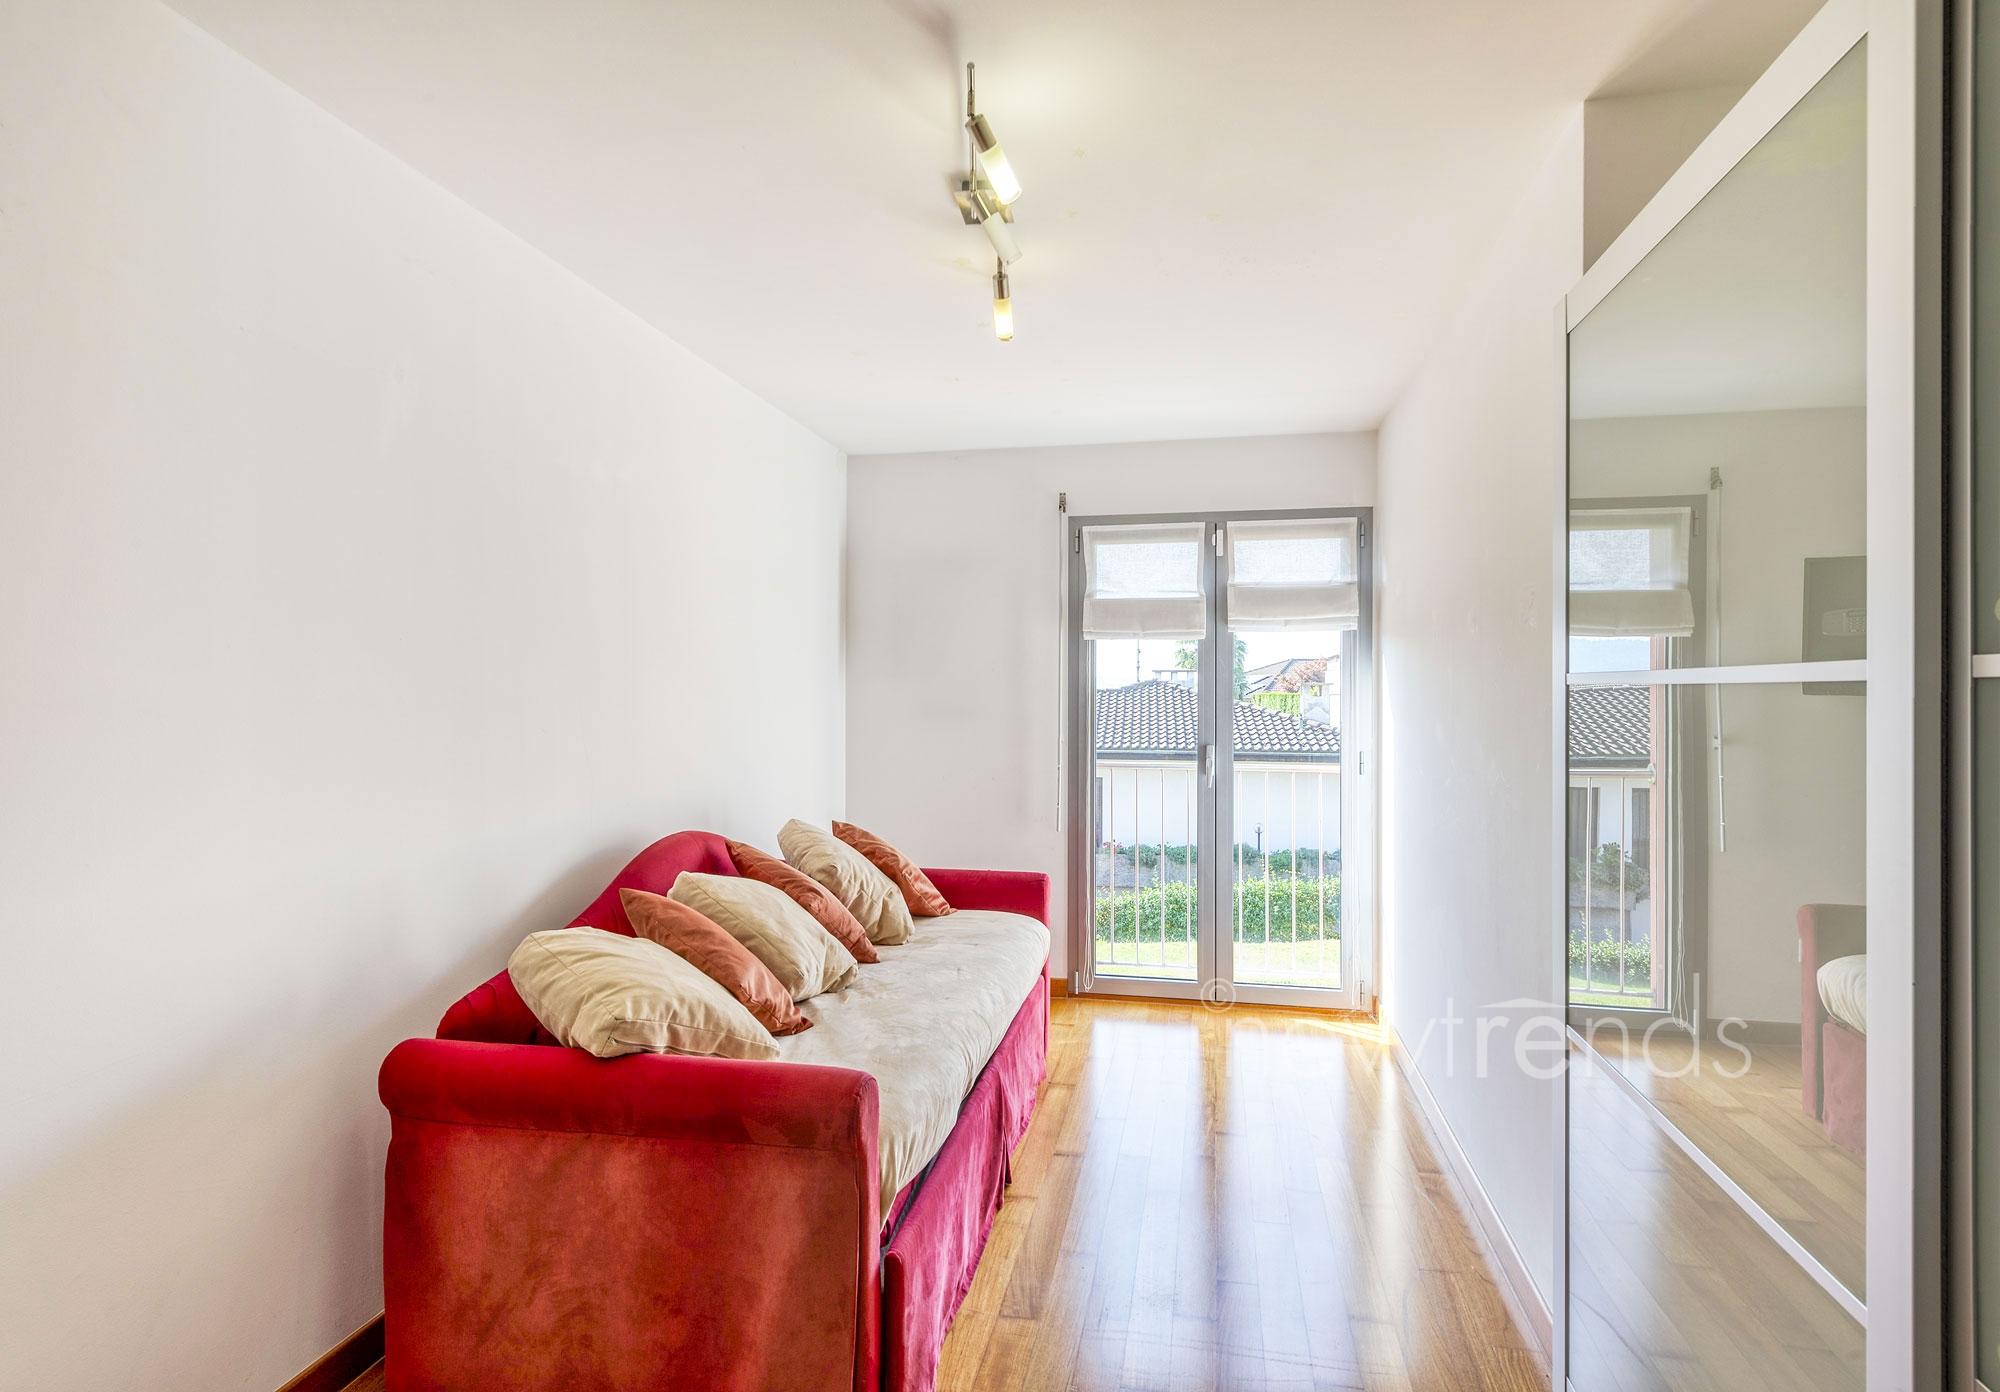 vendesi appartamento moderno ottimo prezzo con ampia terrazza coperta a gravesano: foto camera secondaria